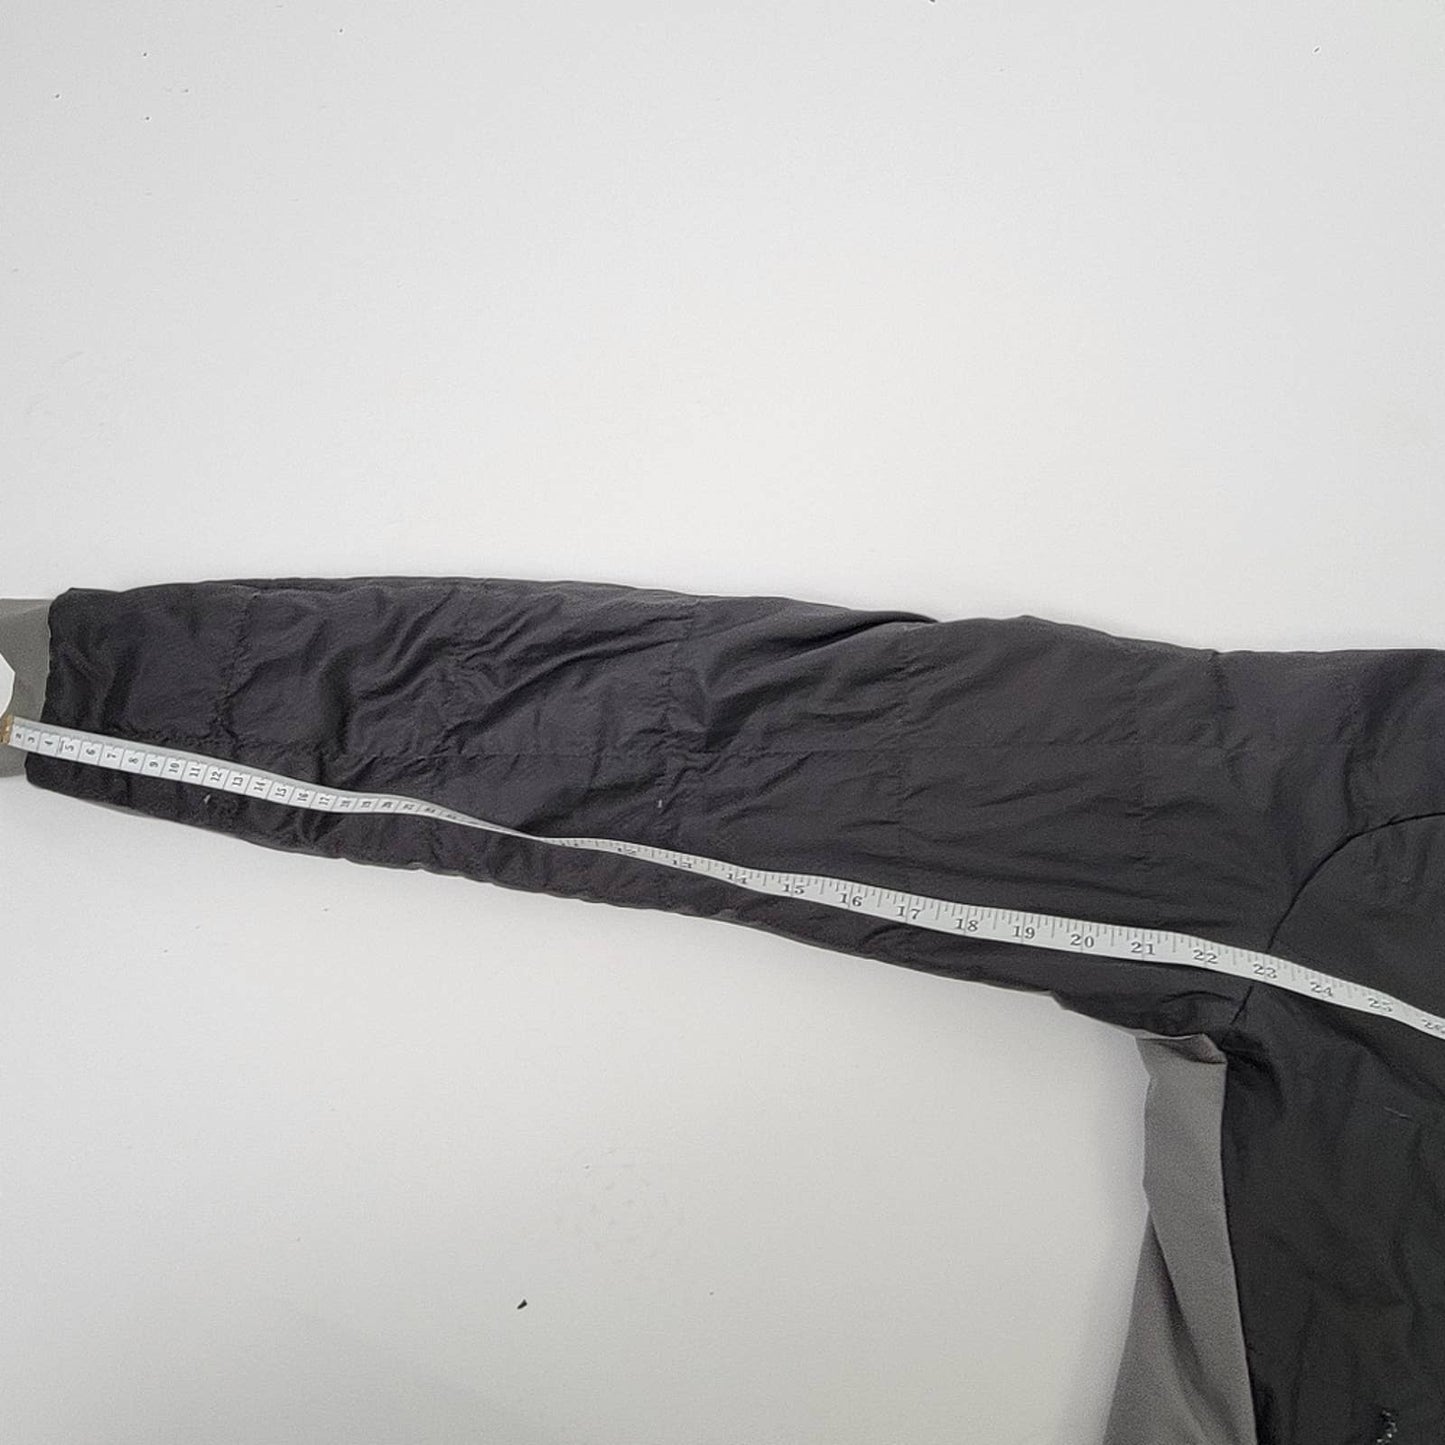 Mountain Hardwear Reversible Quilted Puffer Ski Jacket - M